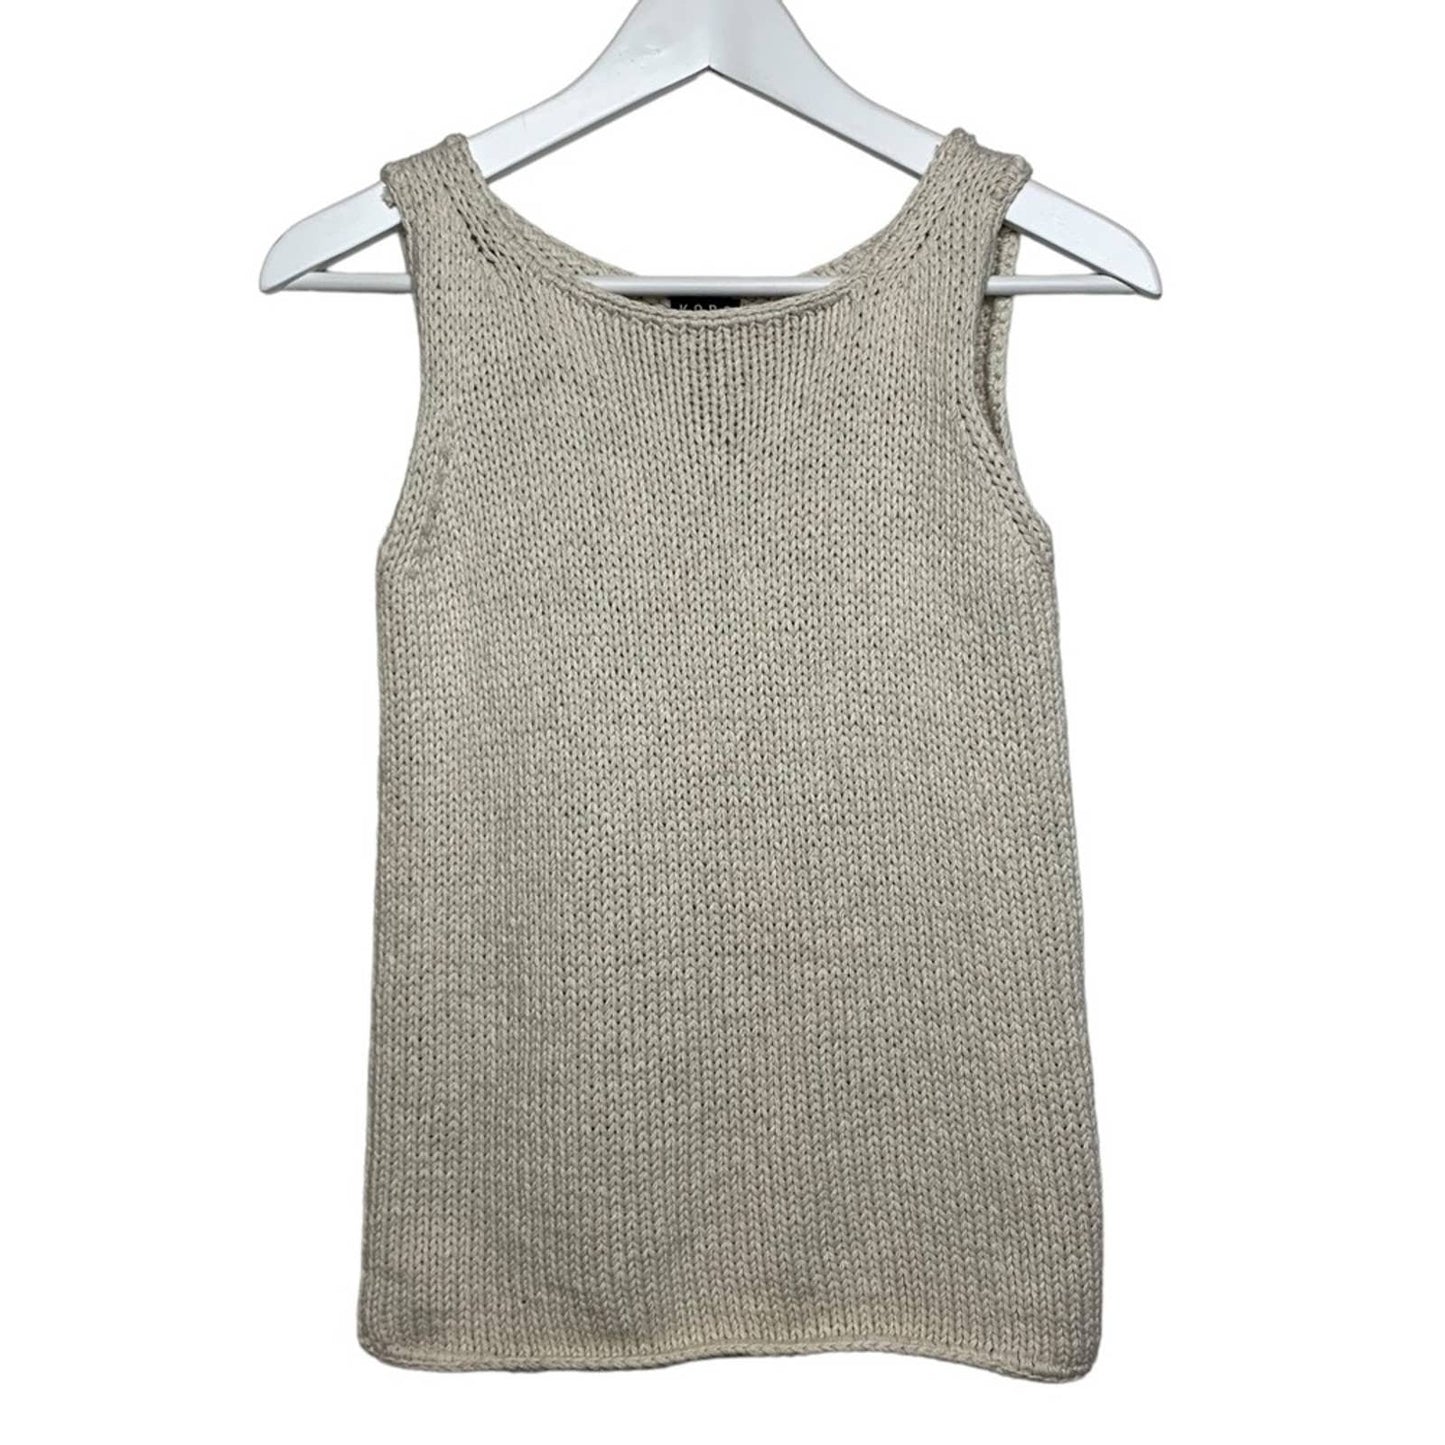 Vintage Michael Kors Cream Knit Tank Top Vest Cotton